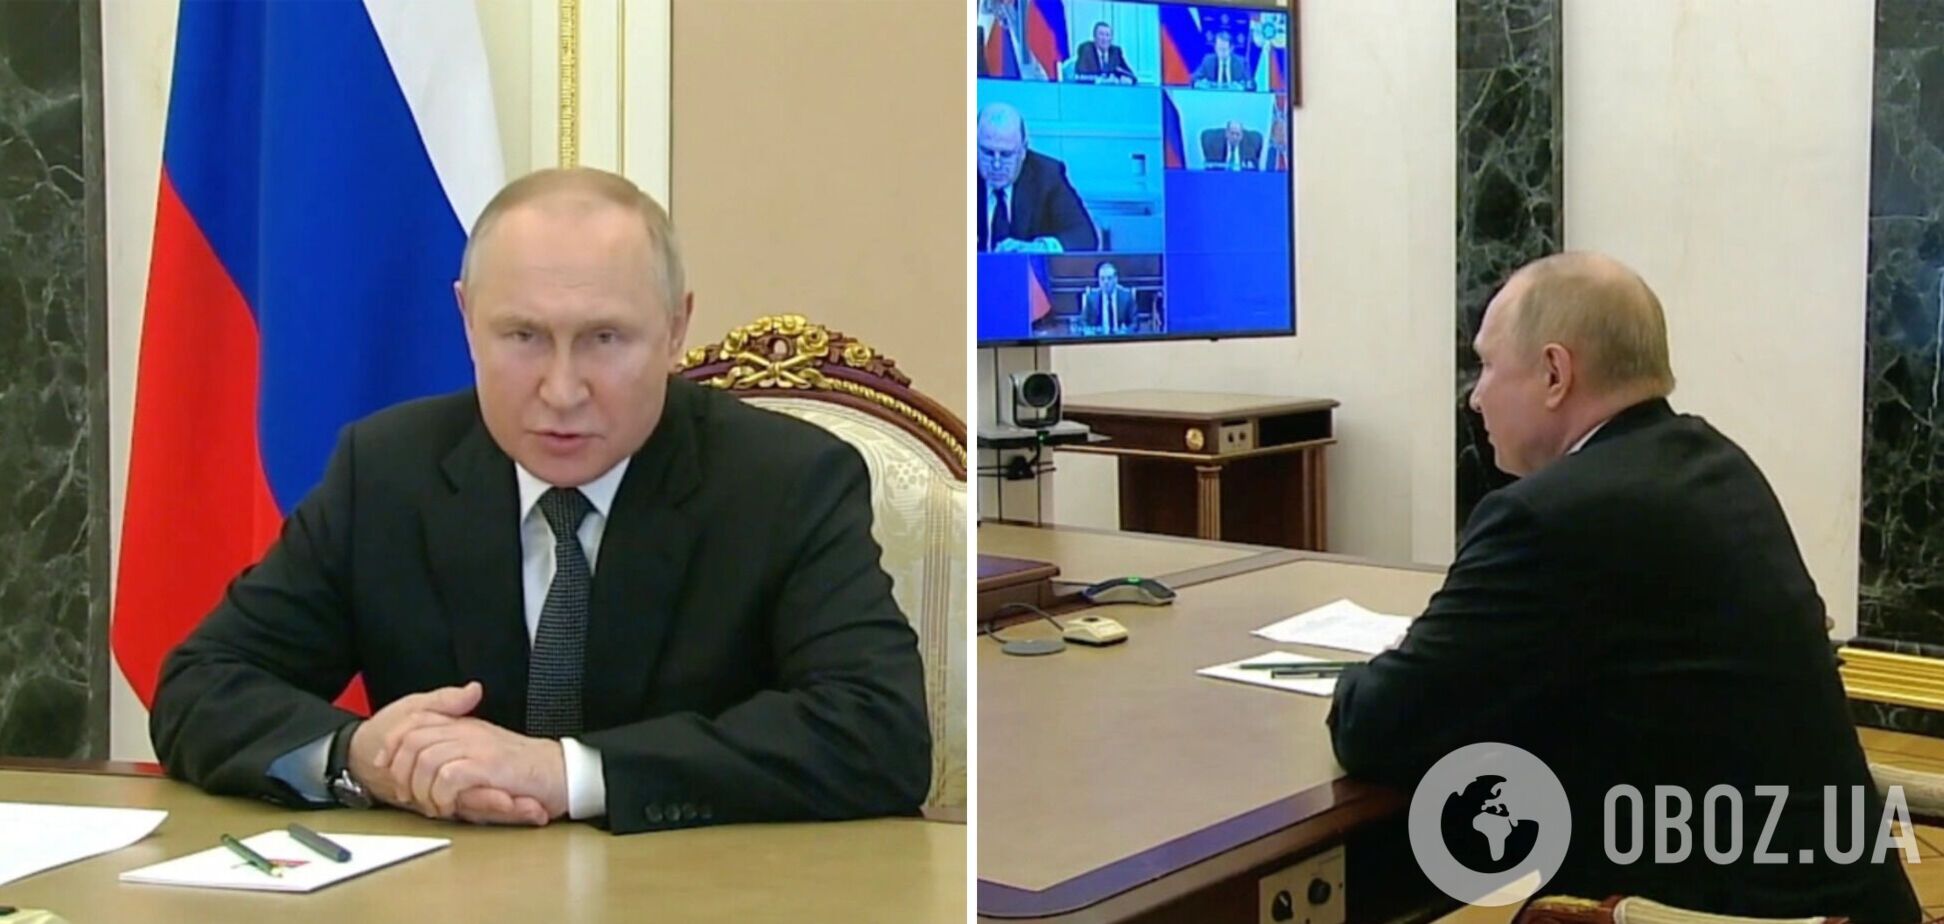 Роздуте обличчя та дивний погляд: Путіна знову запідозрили у приховуванні хвороби фотошопом